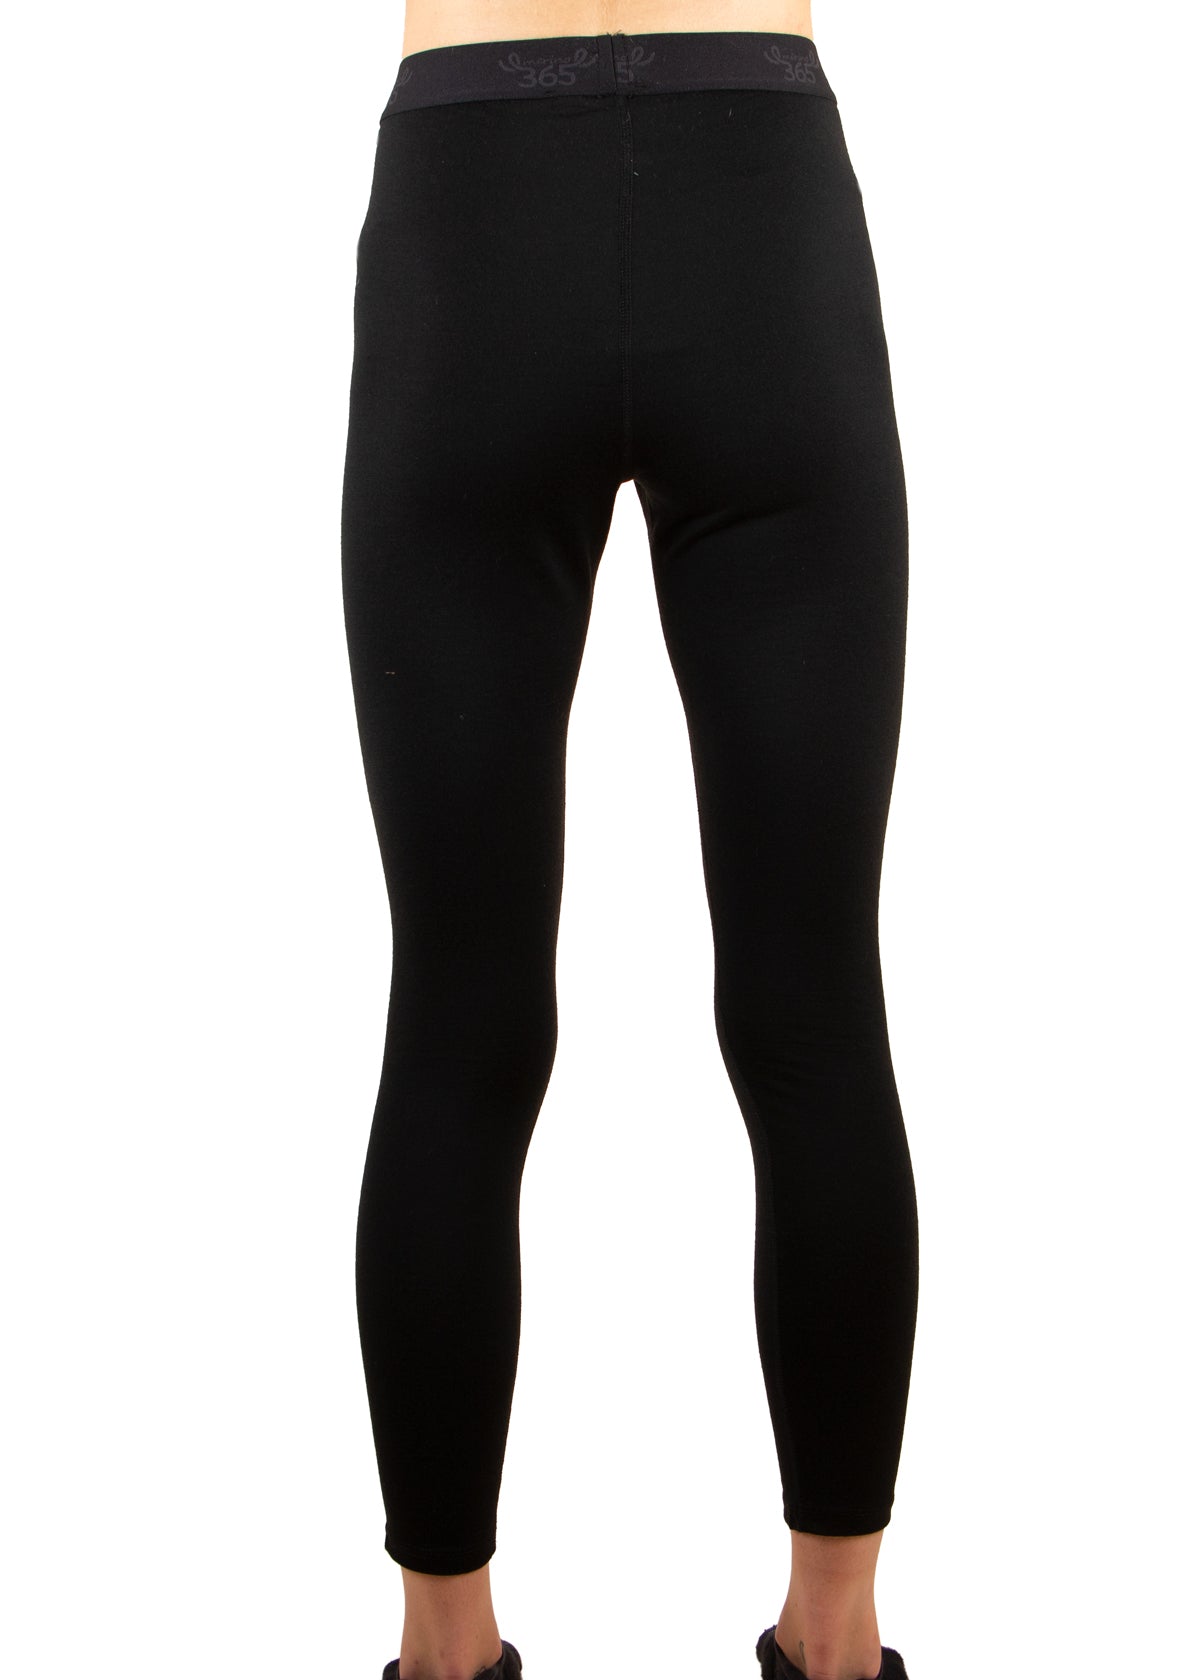 Merino 365 Women's Slim Pant with Comfort Waistband, Black